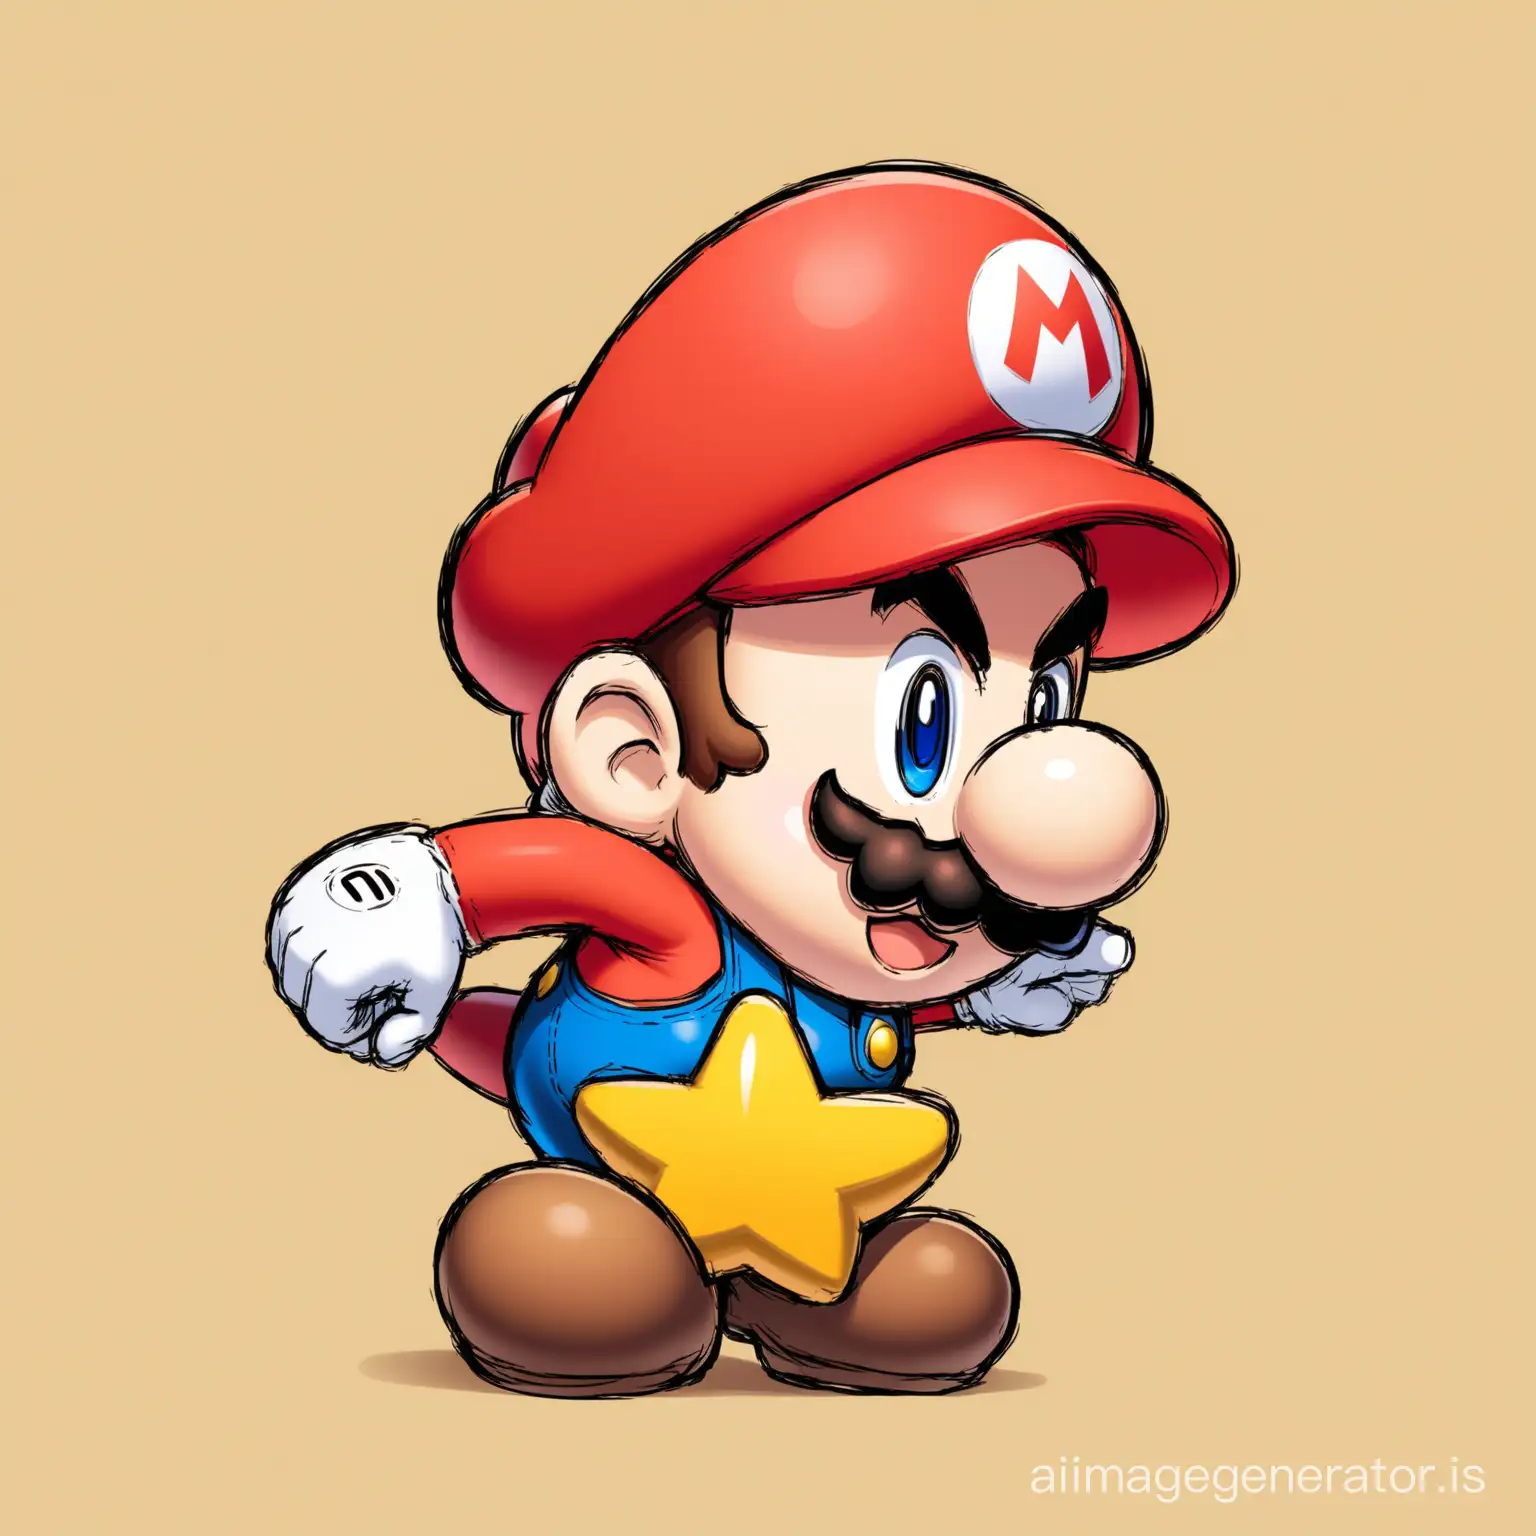 Adventurous-Plumber-Mario-on-a-Mushroom-Kingdom-Quest